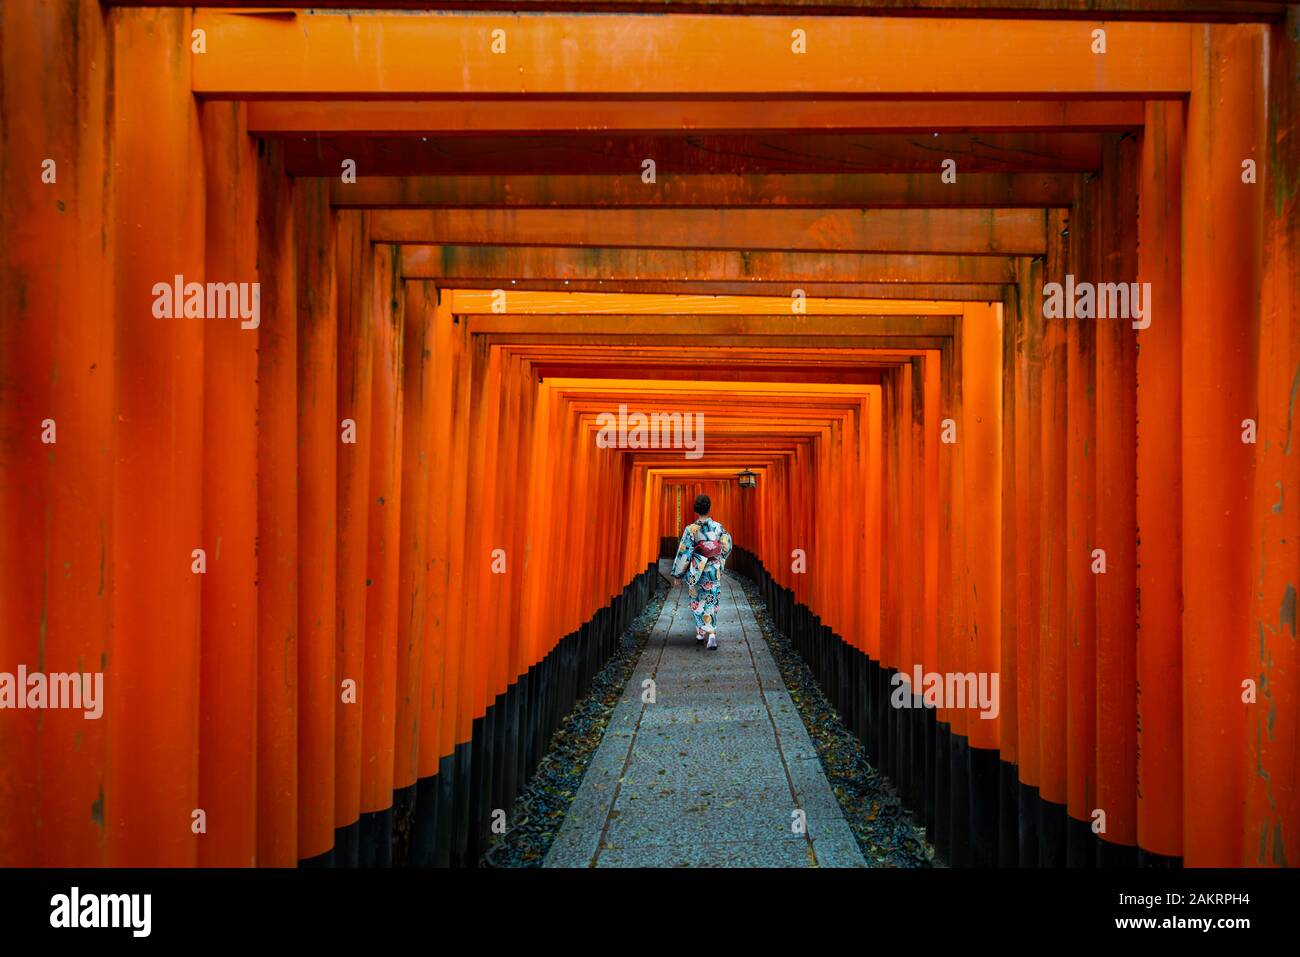 Geishas Wandern und Sightseeing unter roten Holz- Tori Gate bei Fushimi Inari Schrein in Kyoto, Japan. Japan. Japan Tourismus, Geschichte Gebäude oder Tradit Stockfoto